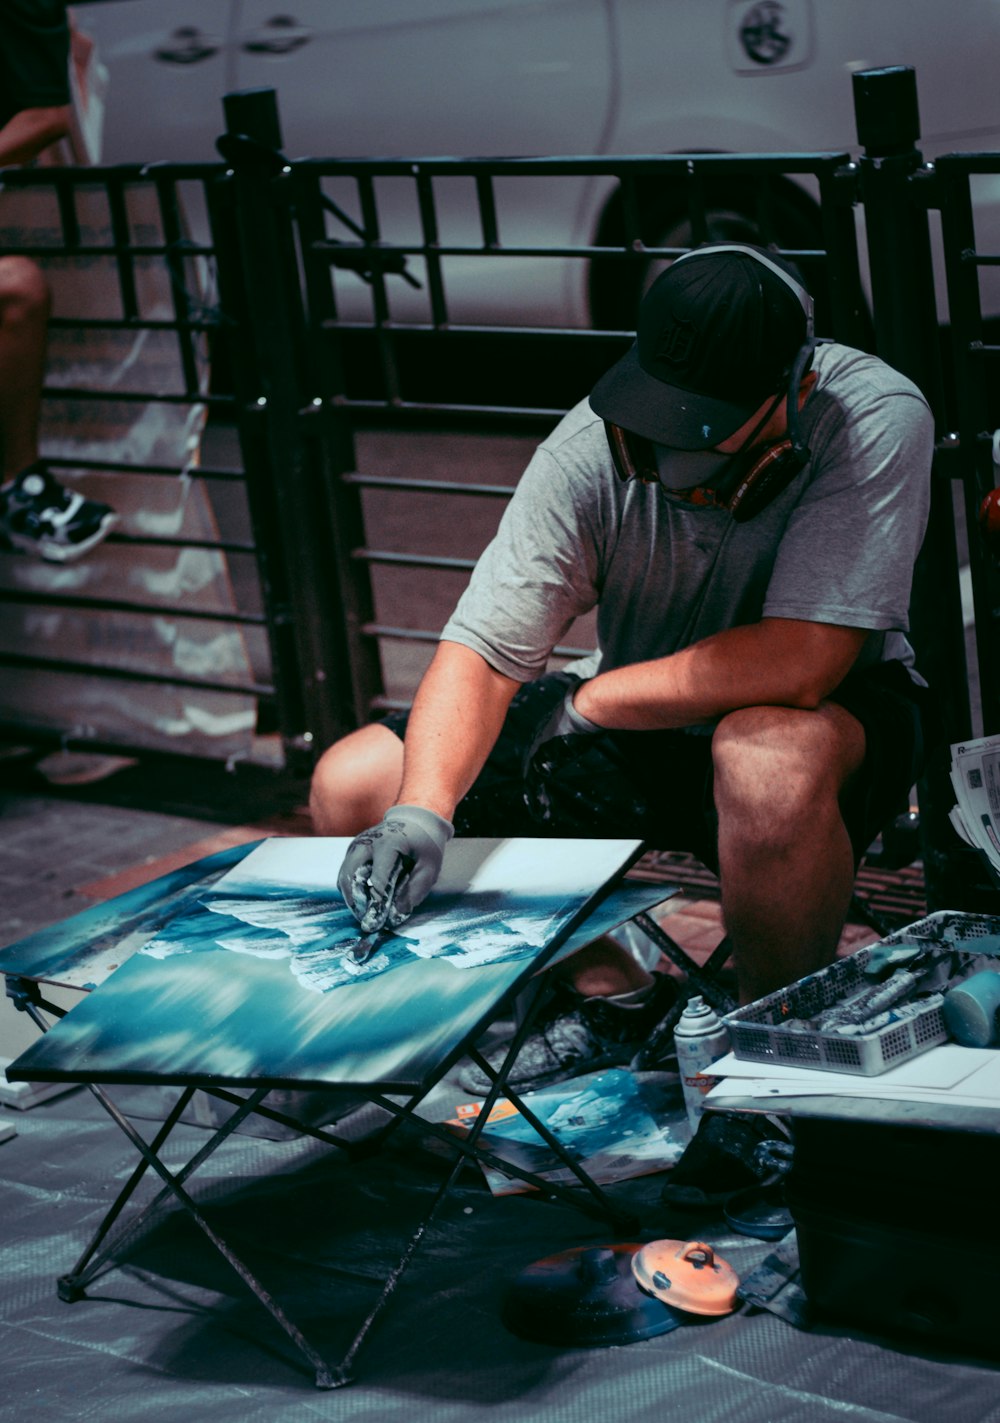 ein mann, der auf einem stuhl sitzt und ein bild malt